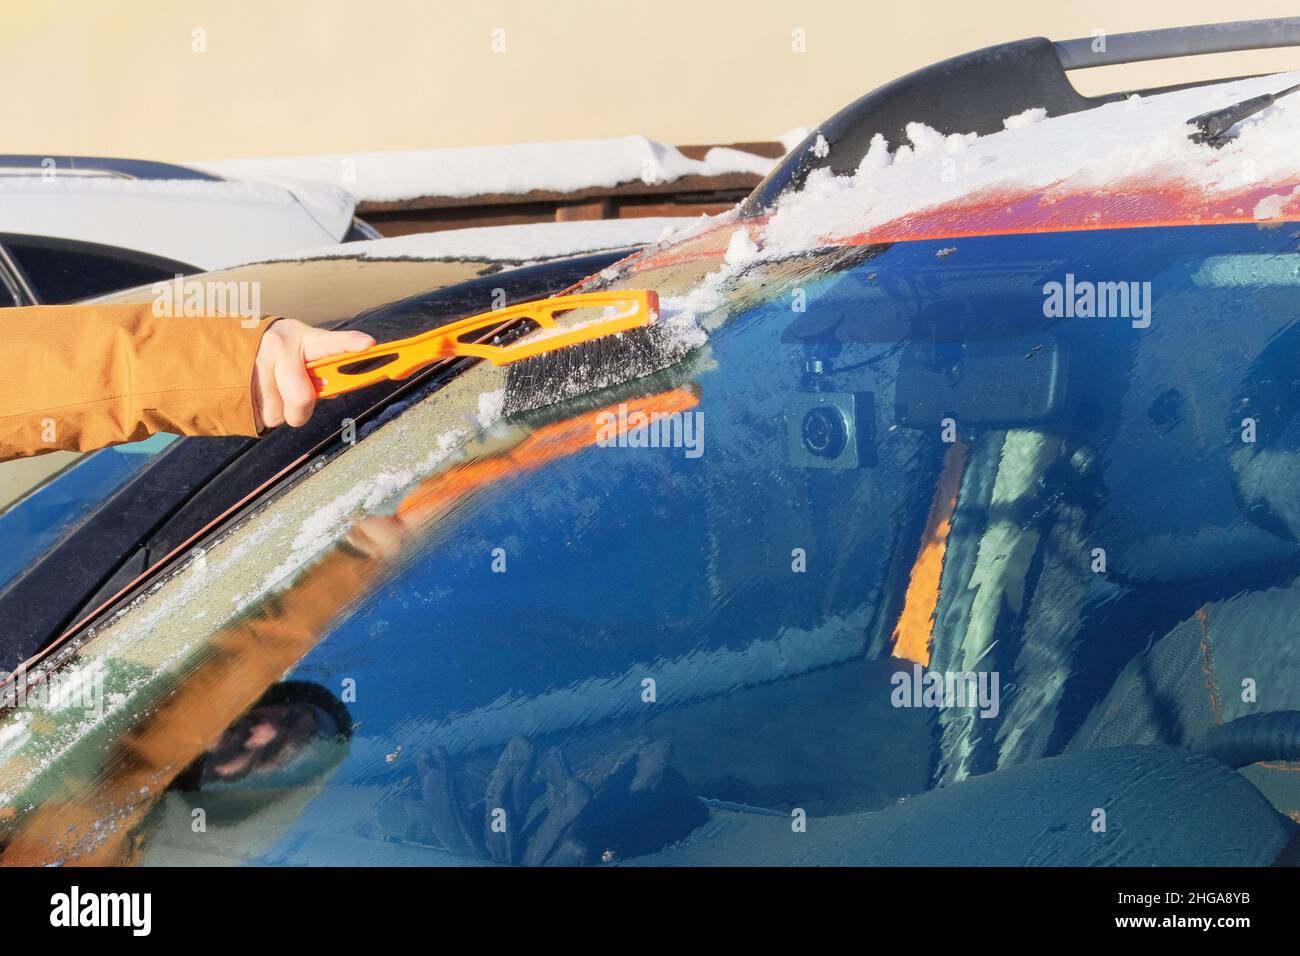 L'homme élimine la voiture orange de la neige.Pare-brise de la voiture.Brossez-vous dans la main.Hiver, neige, véhicule. Banque D'Images